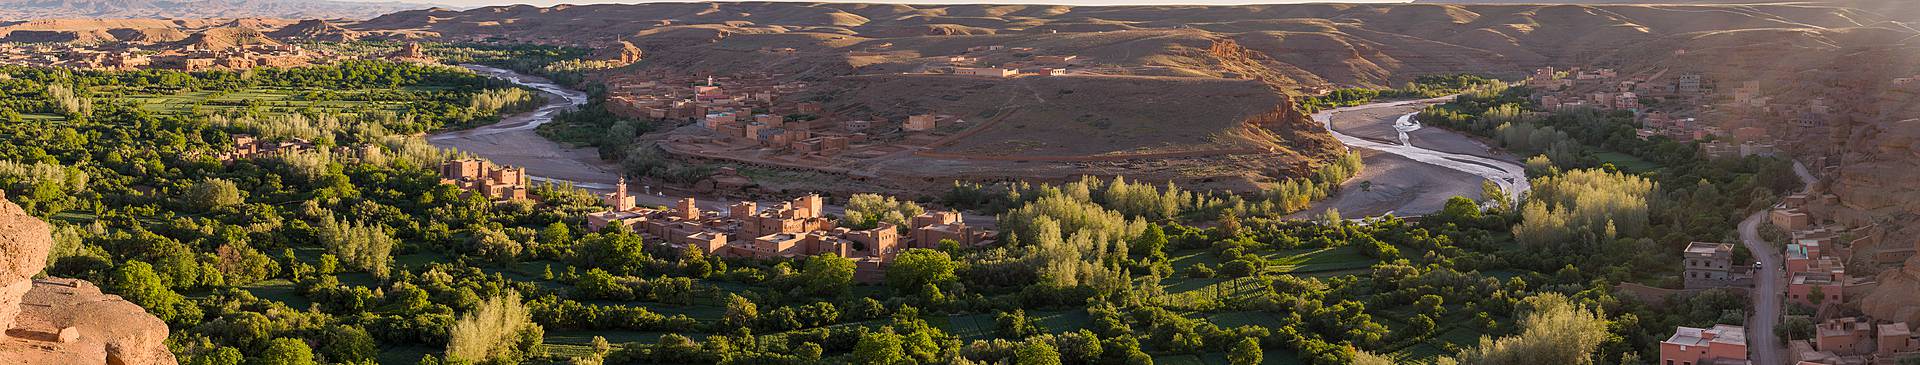 Viaggi in Marocco in estate